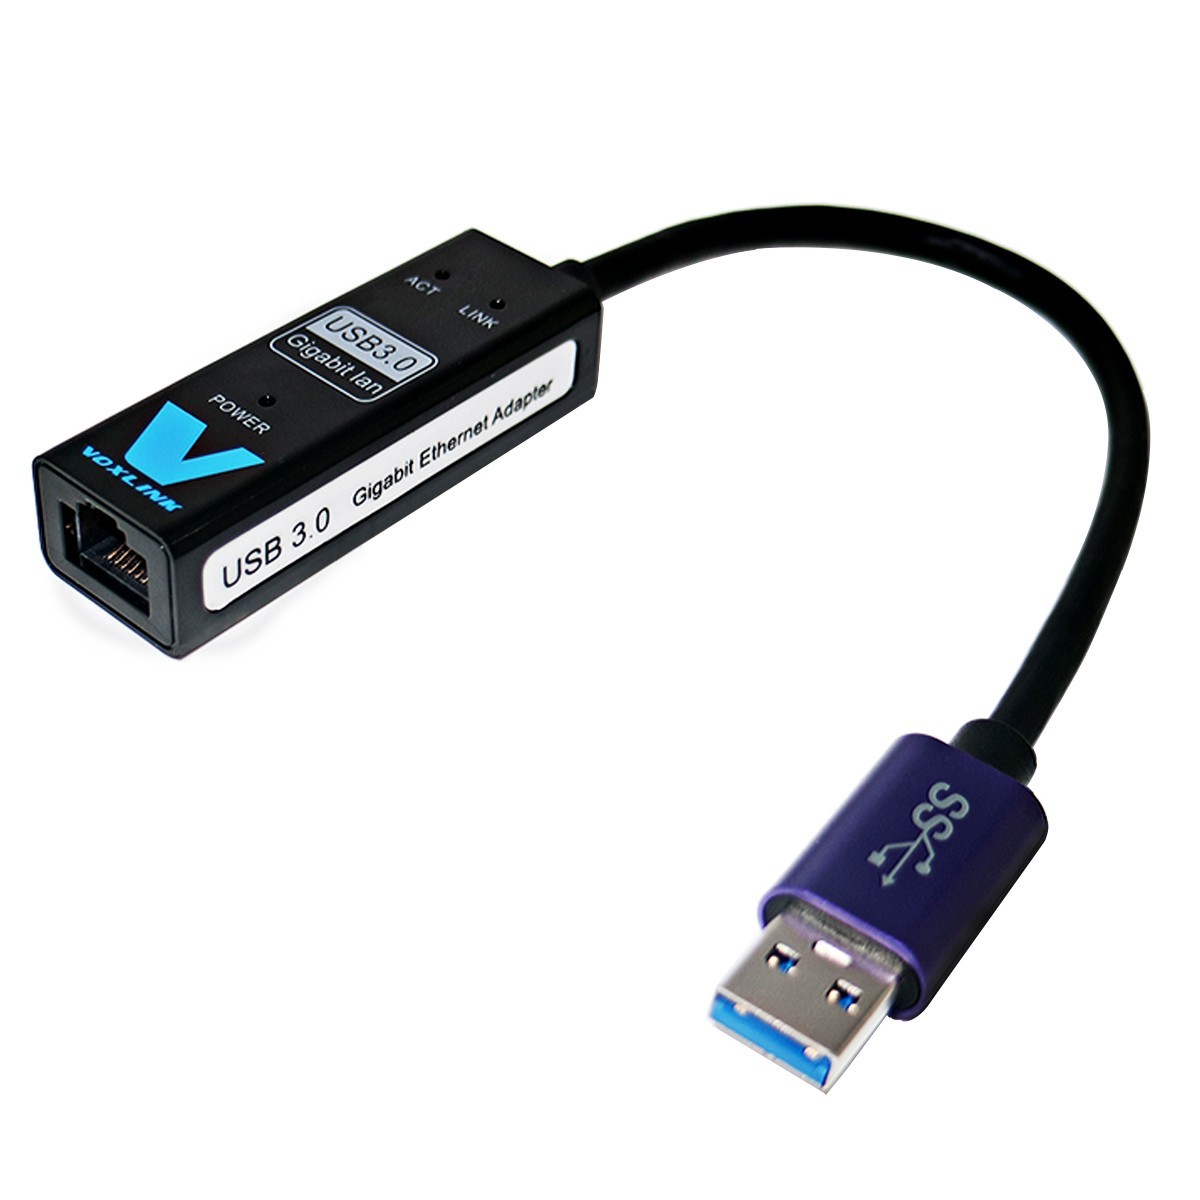 Voxlink USB 3.0 10/100/1000 Mbps Gigabit Ethernet Adapter